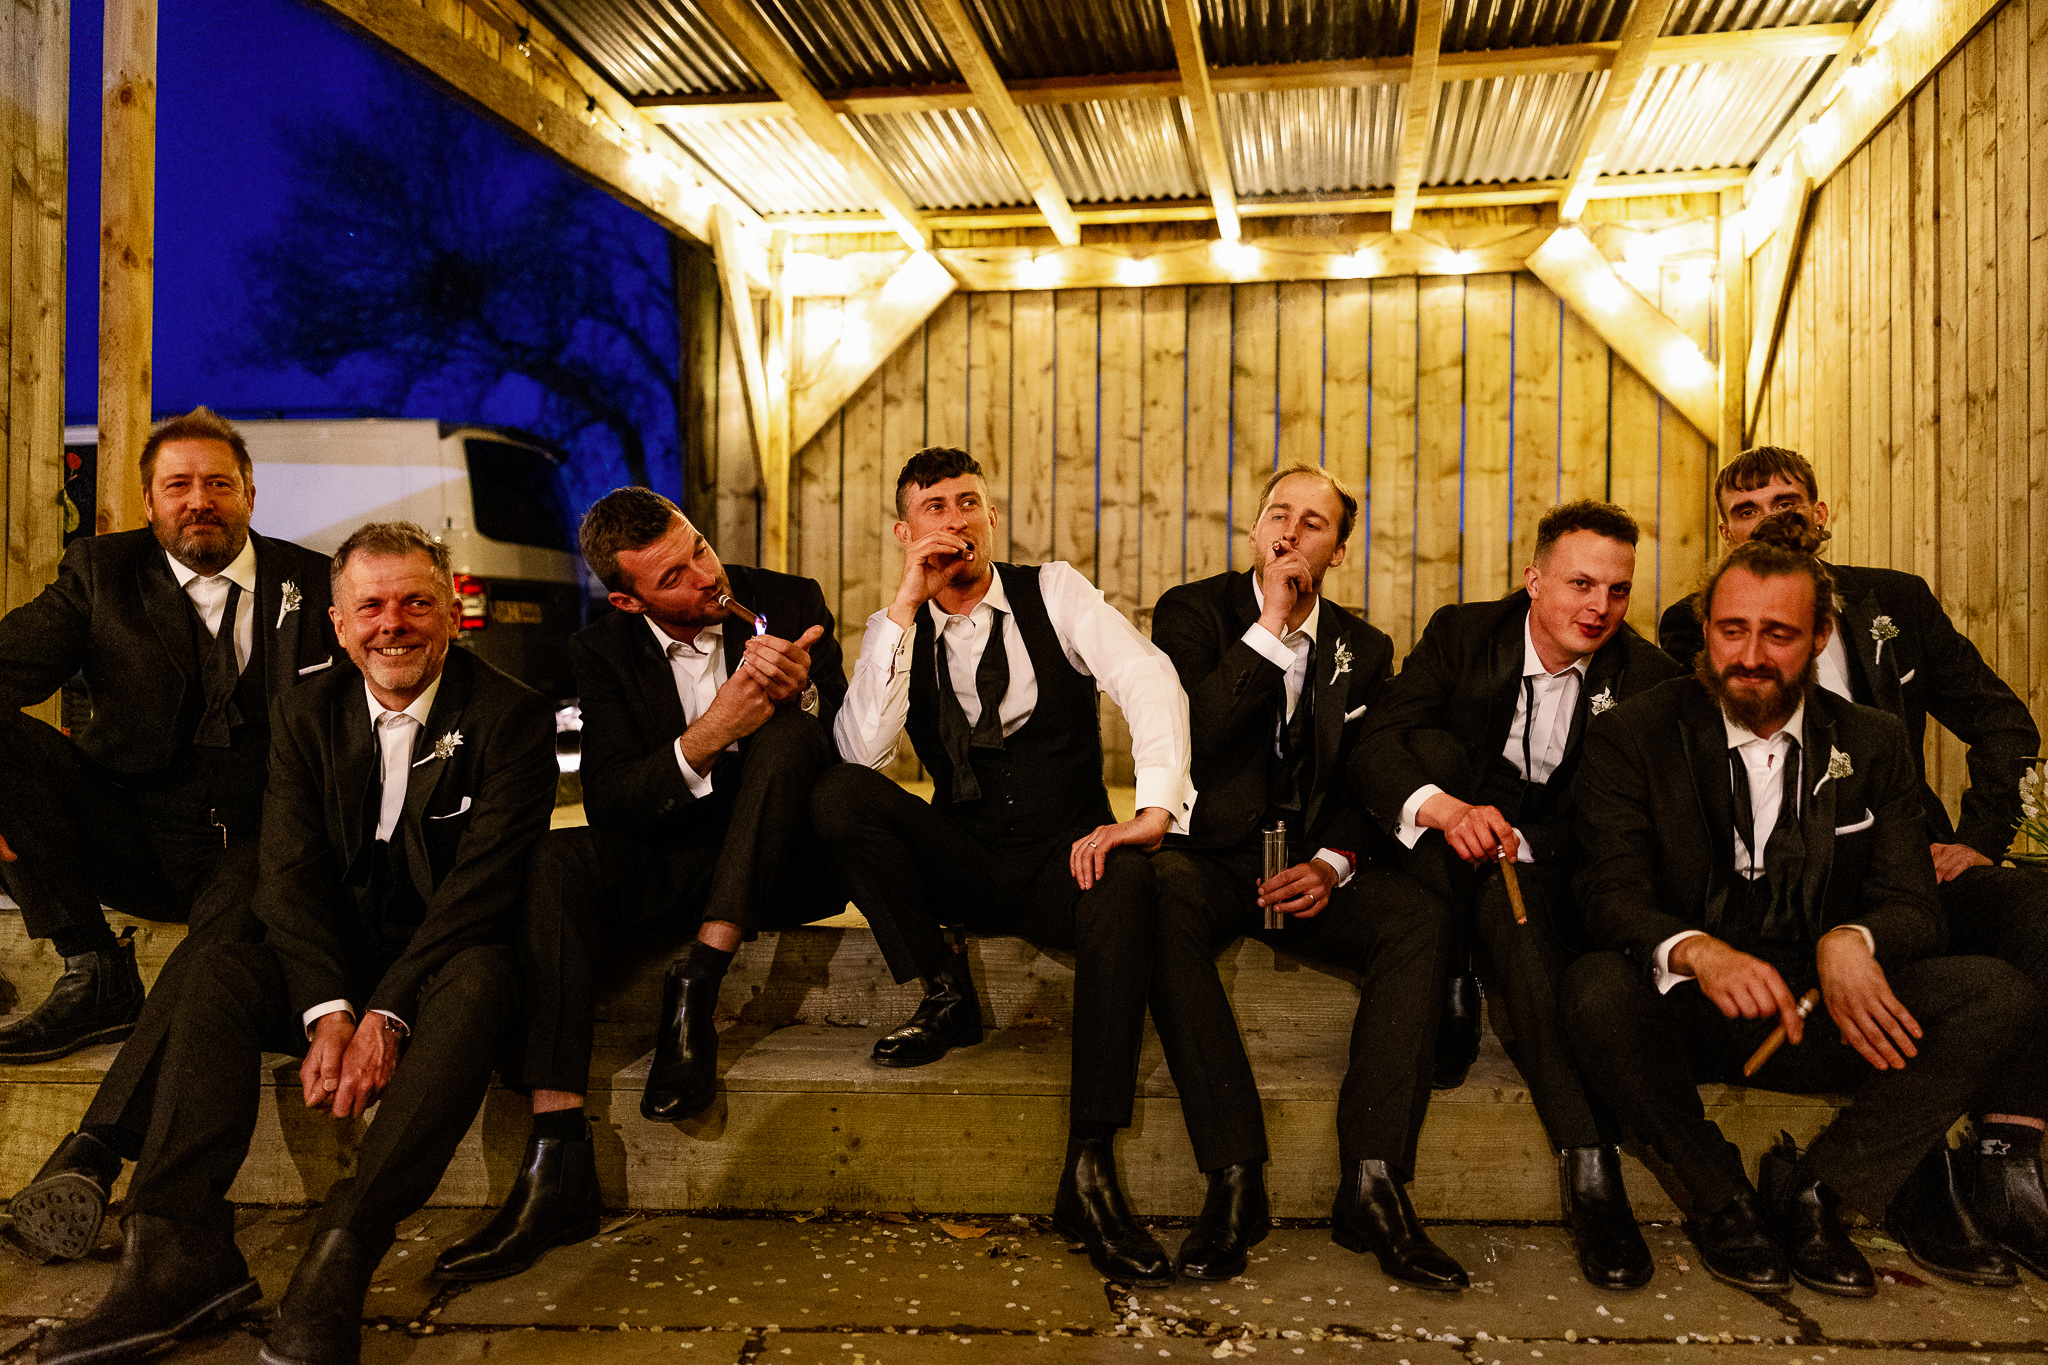 Groomsmen smoking cigars in Tuxedos 